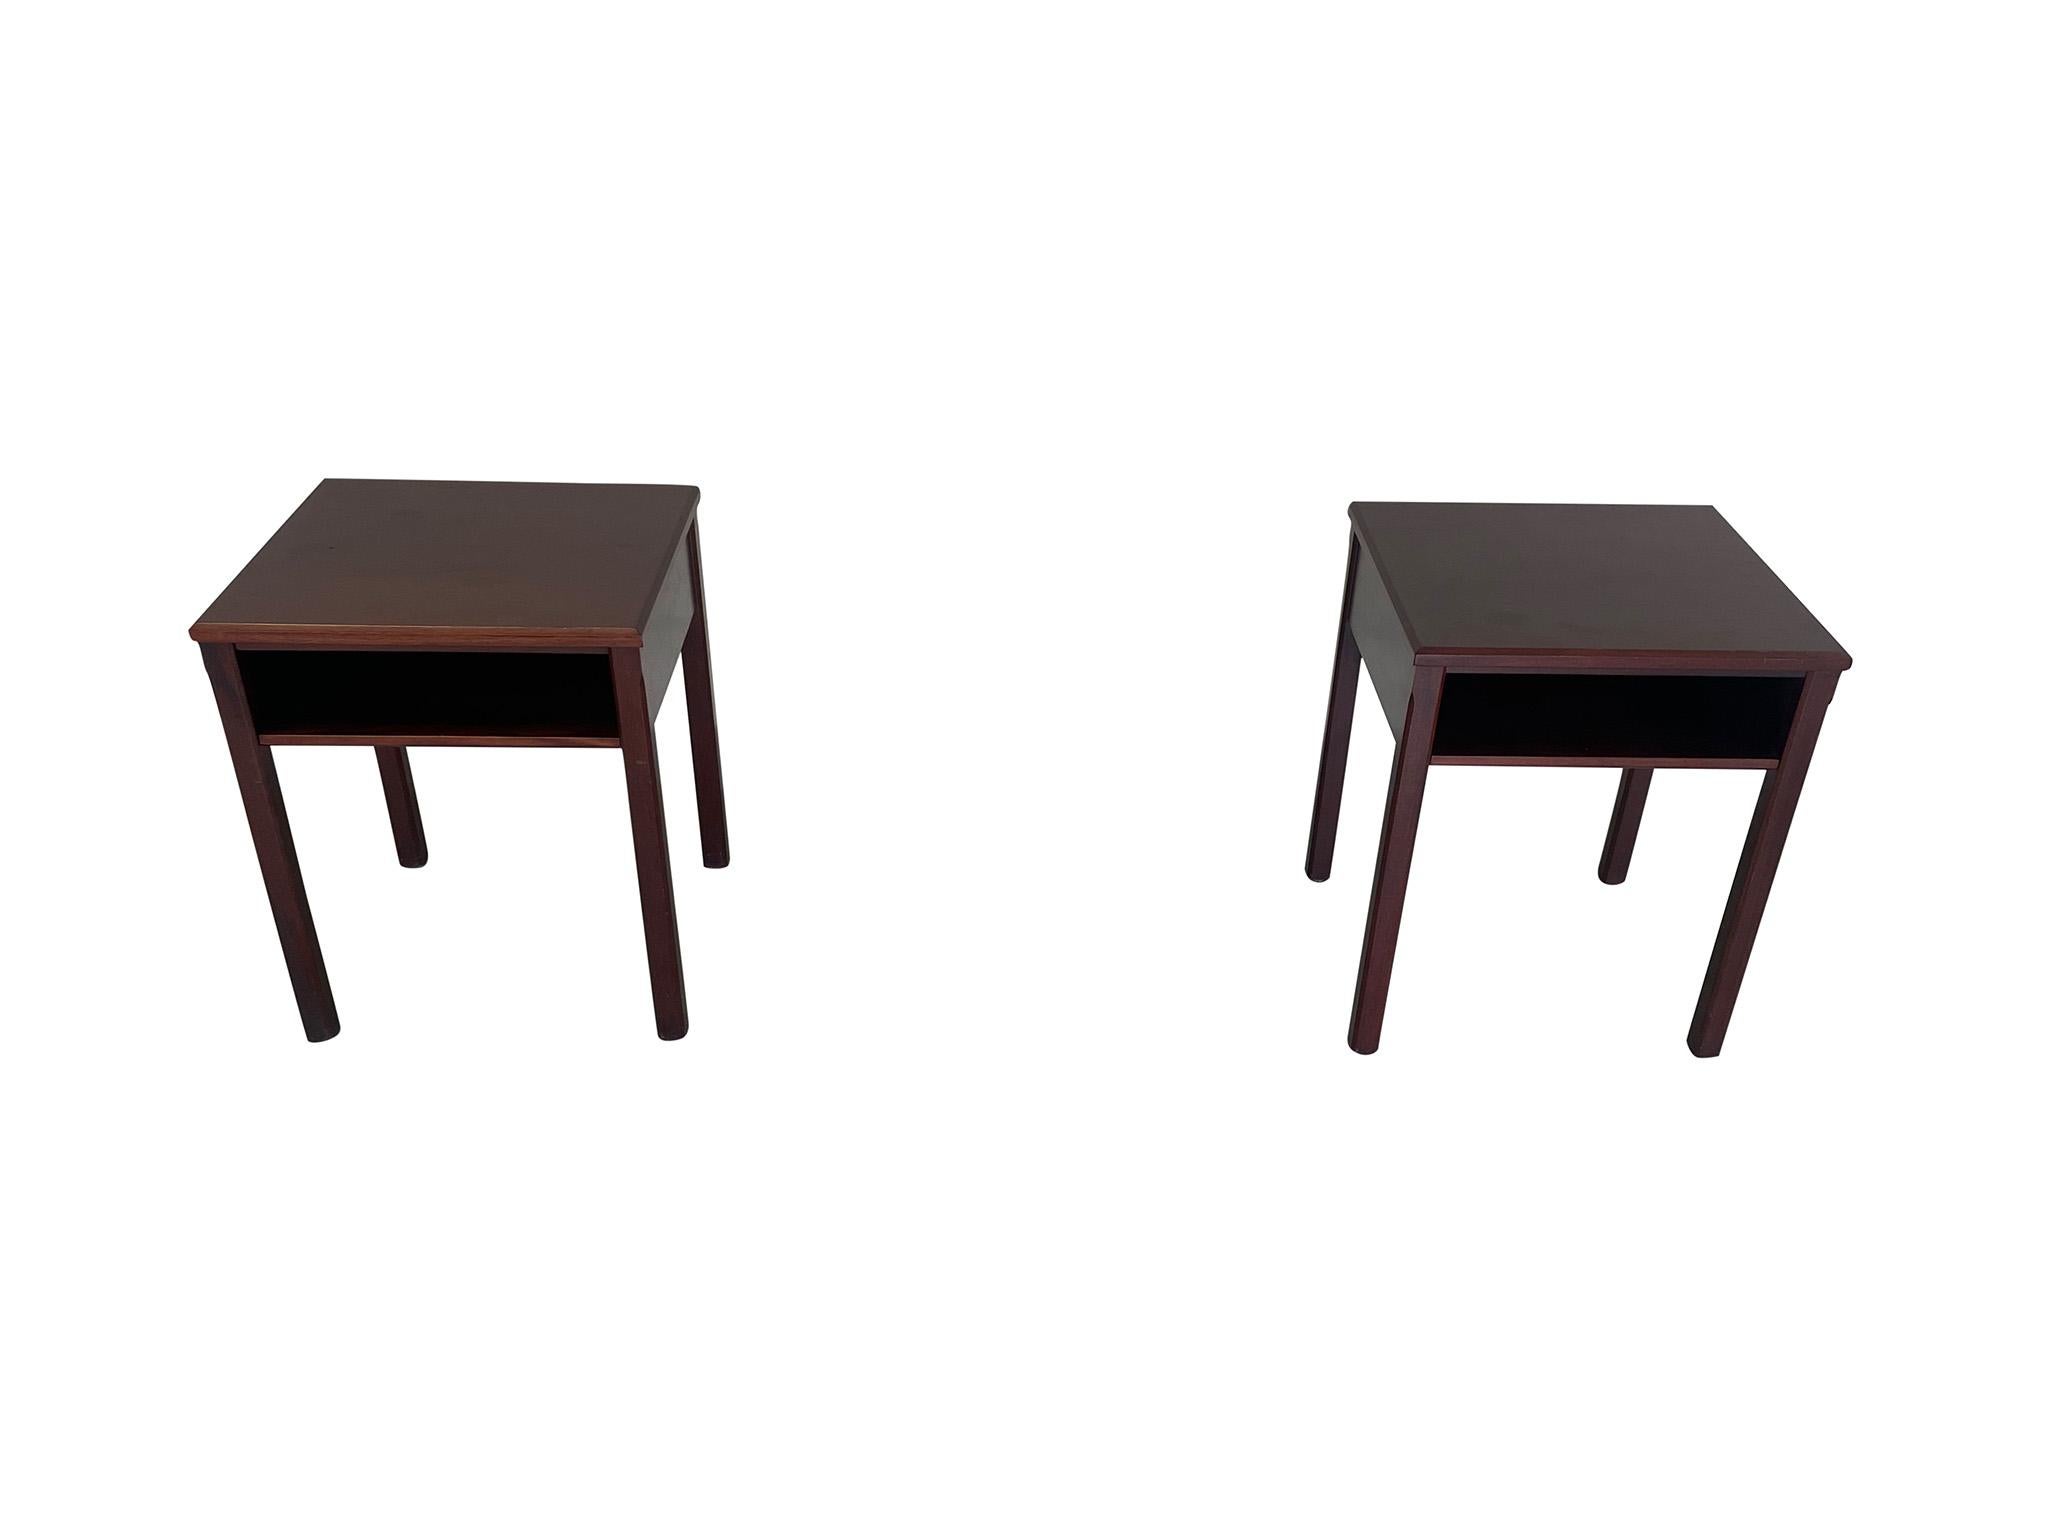 Ravissante paire de tables de nuit modernes danoises des années 1950, avec la marque de Lysberg, Hansen et Therp sur le dessous. Fabriquées dans un acajou de haute qualité, les tables sont conçues avec des lignes classiques et épurées, des étagères